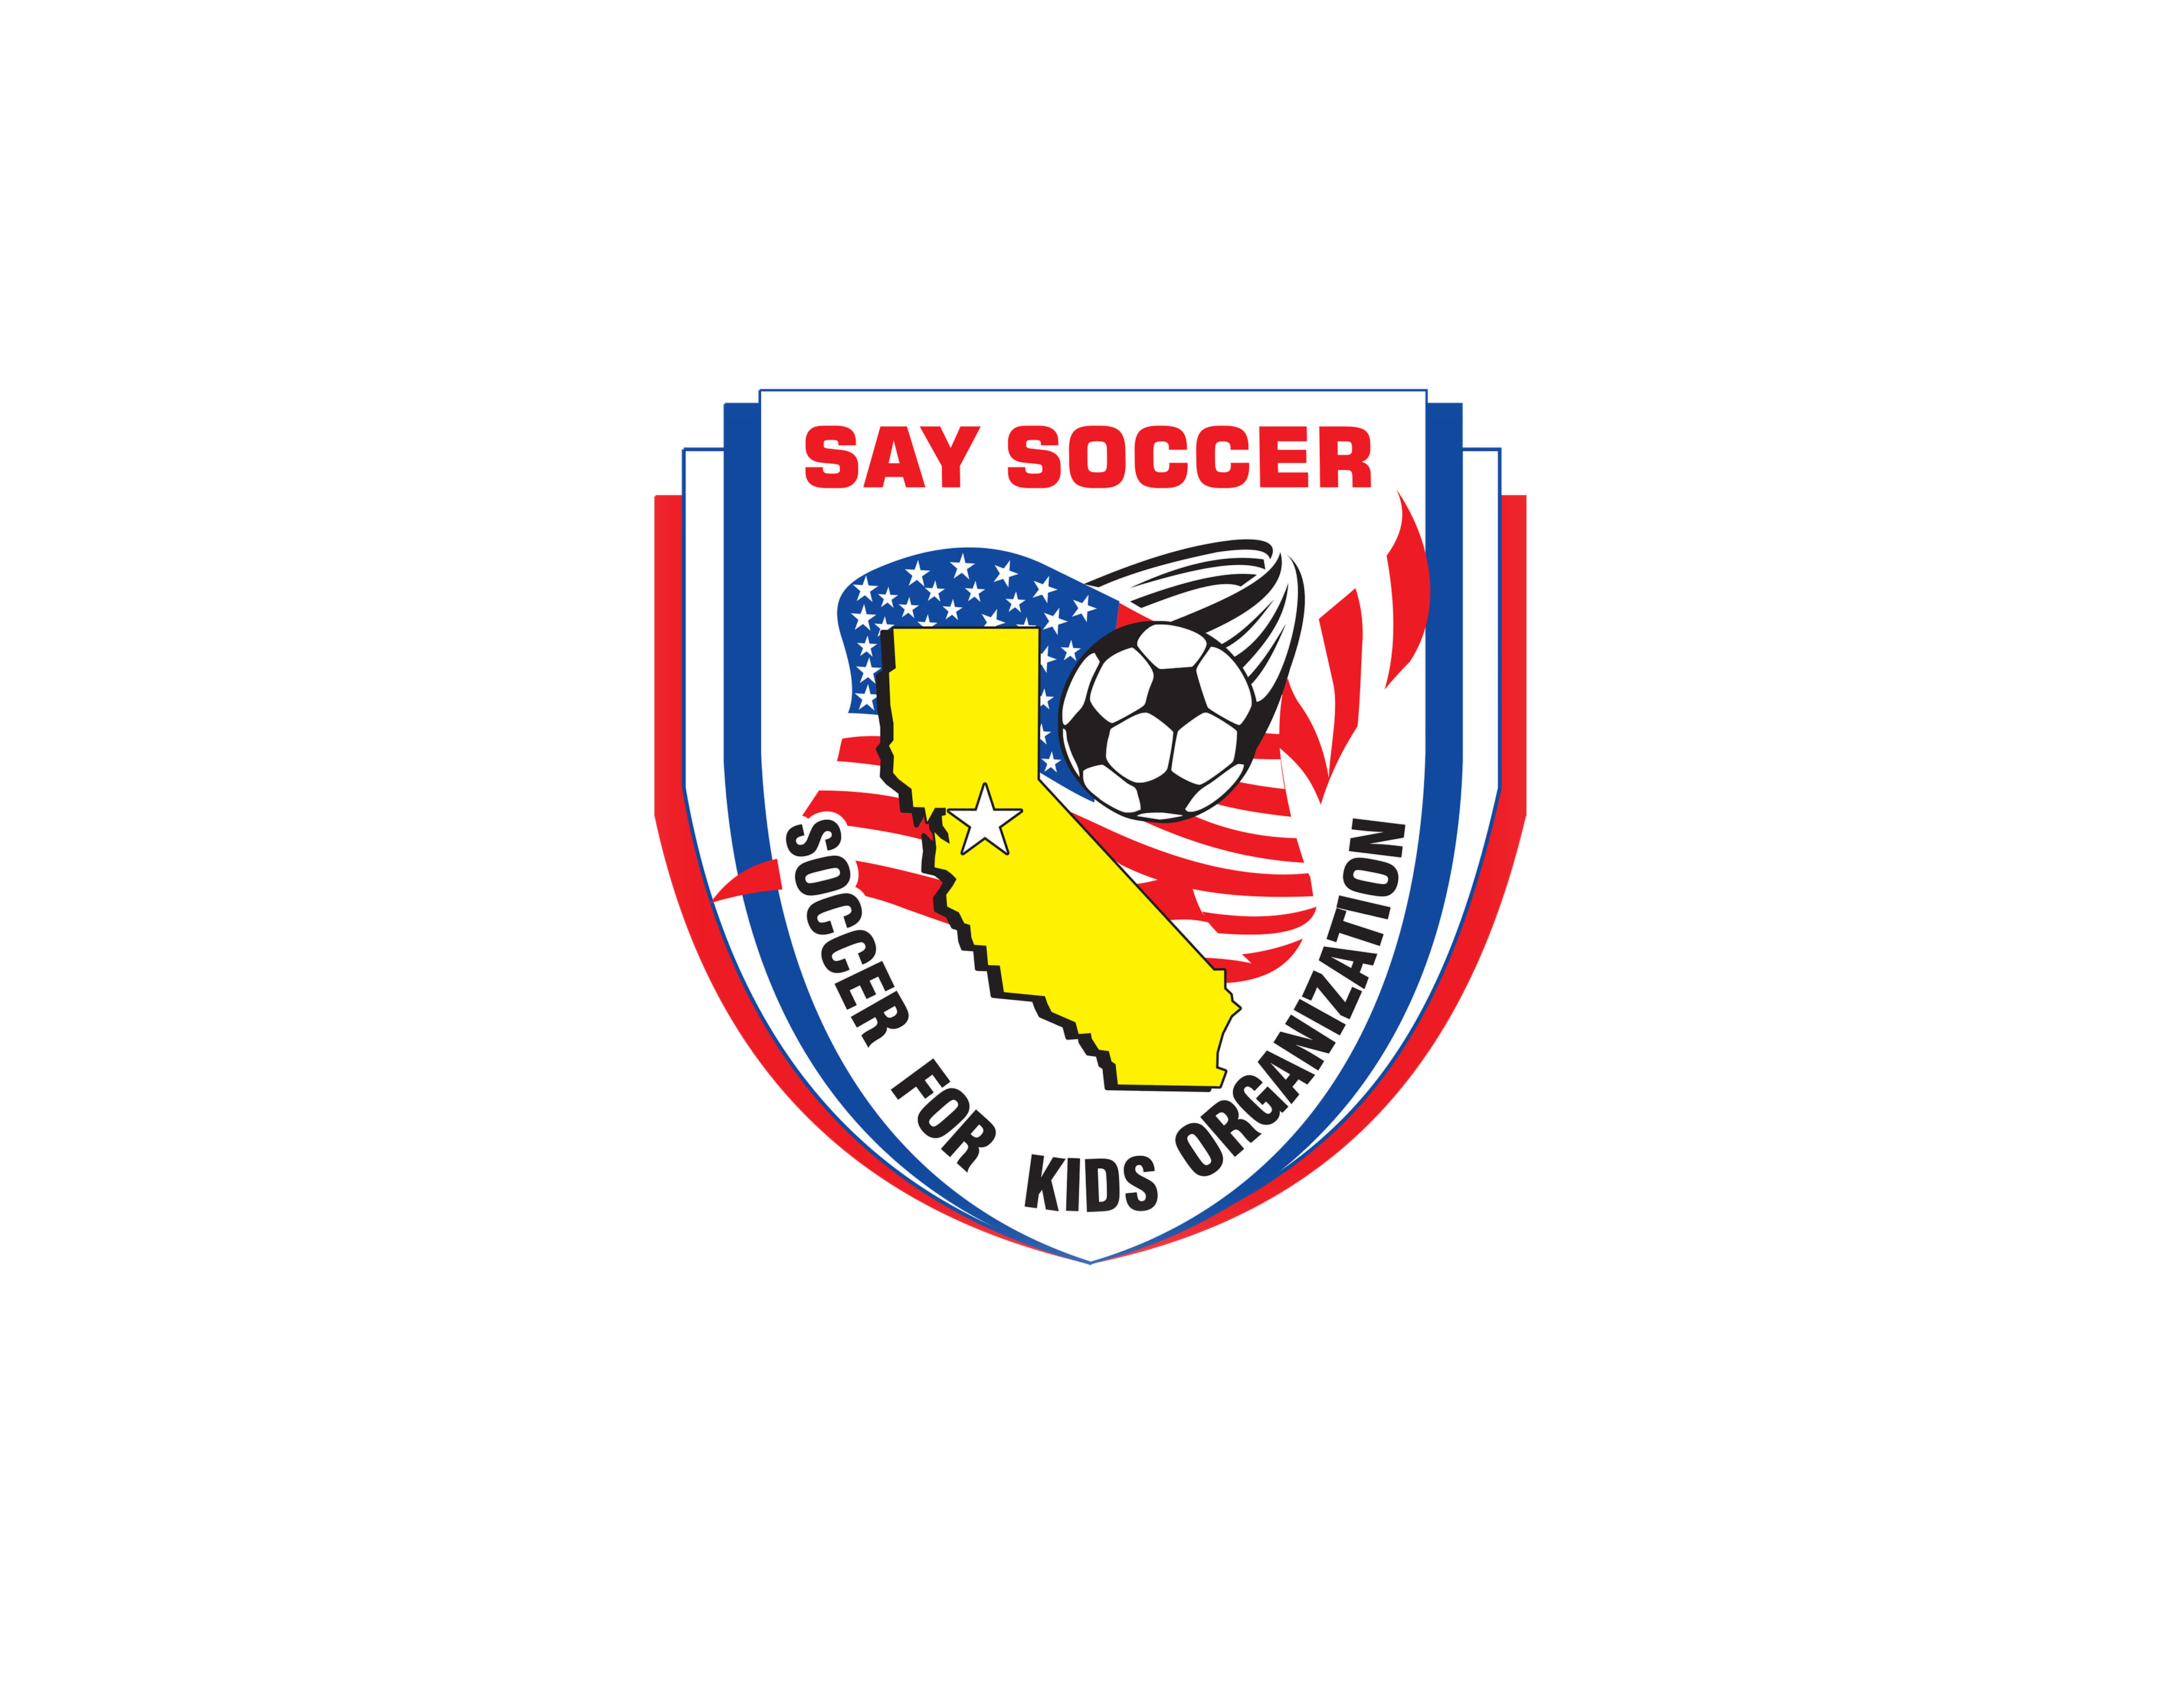 Soccer For Kids team badge